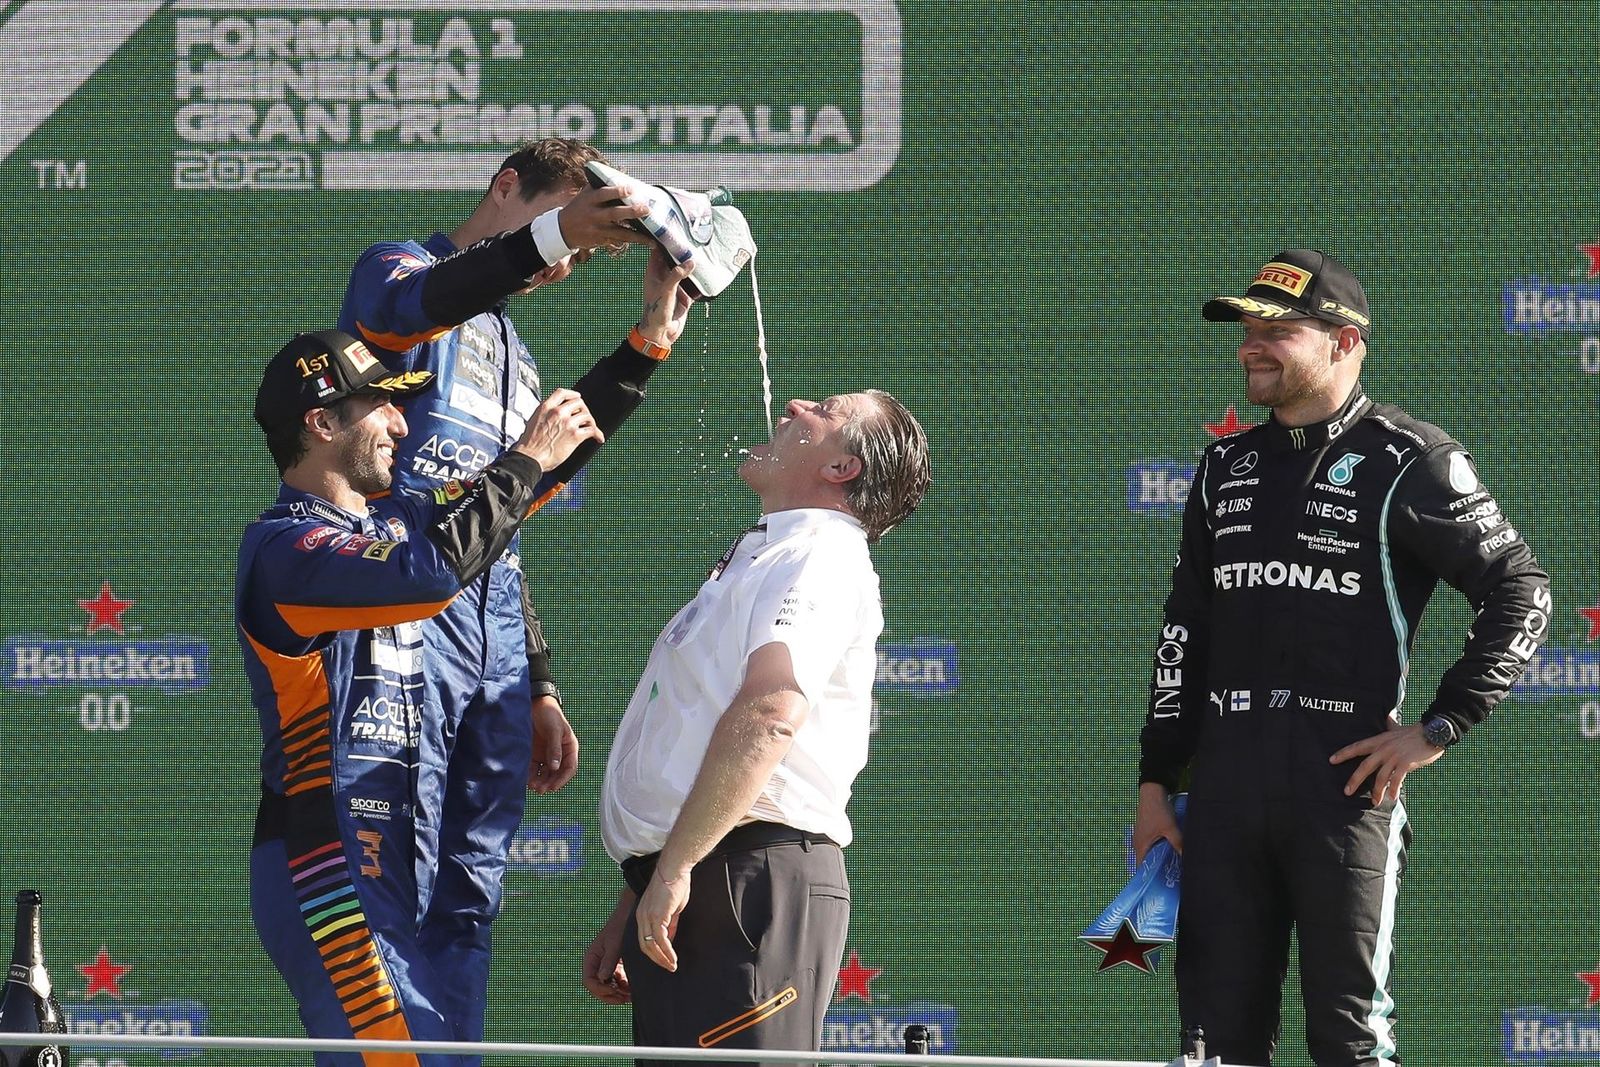  Gran Premio de Italia